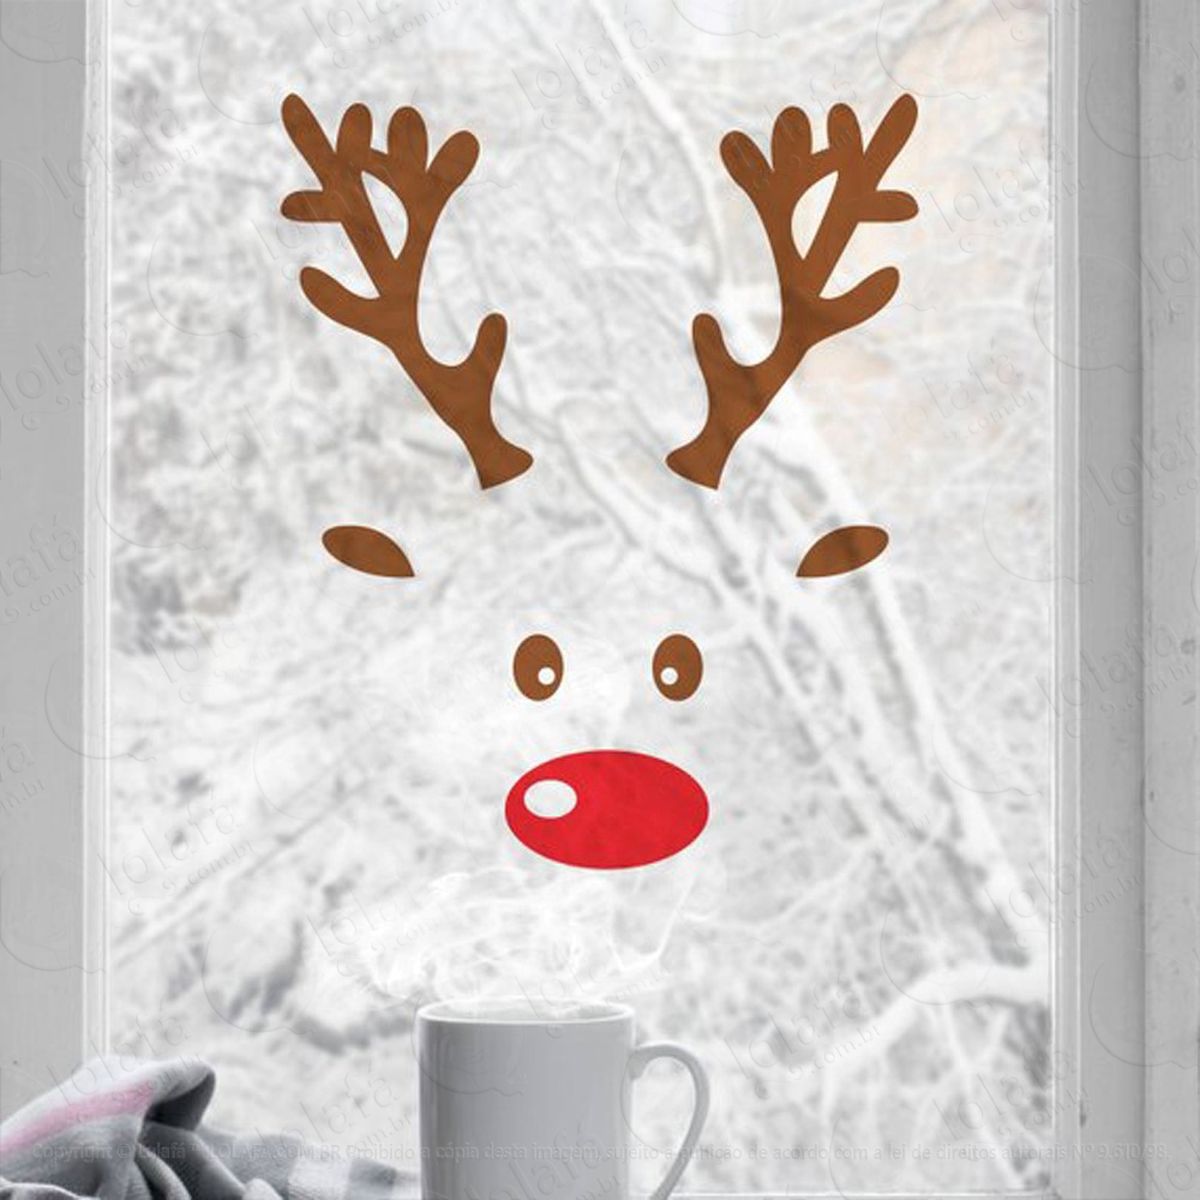 rosto de rudolph adesivo de natal para vitrine, parede, porta de vidro - decoração natalina mod:238